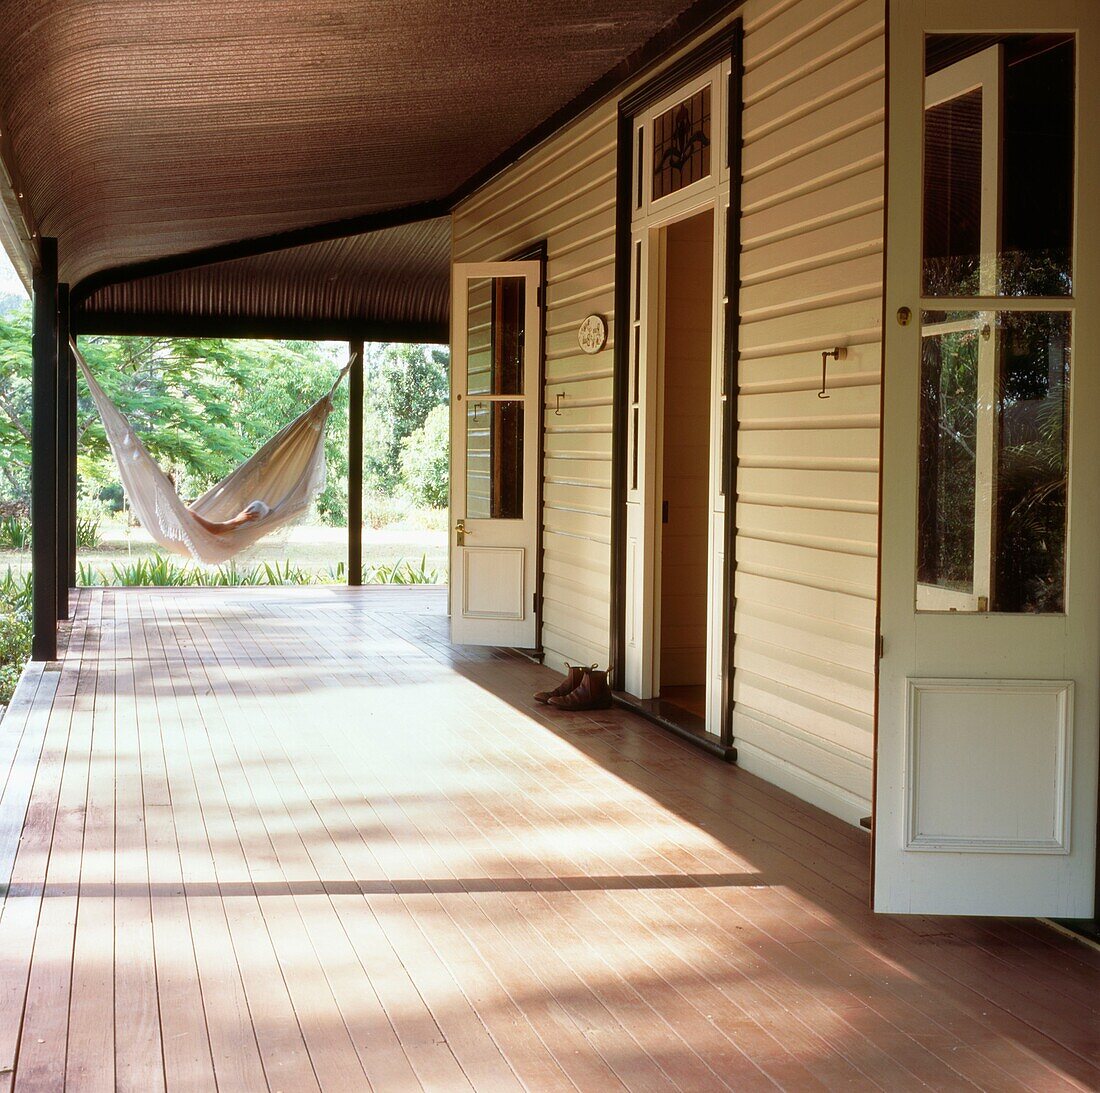 Holzgetäfeltes Haus im kolonialen Landhausstil mit großer Veranda, französischen Fenstern und einer Hängematte im gedämpften Sonnenlicht